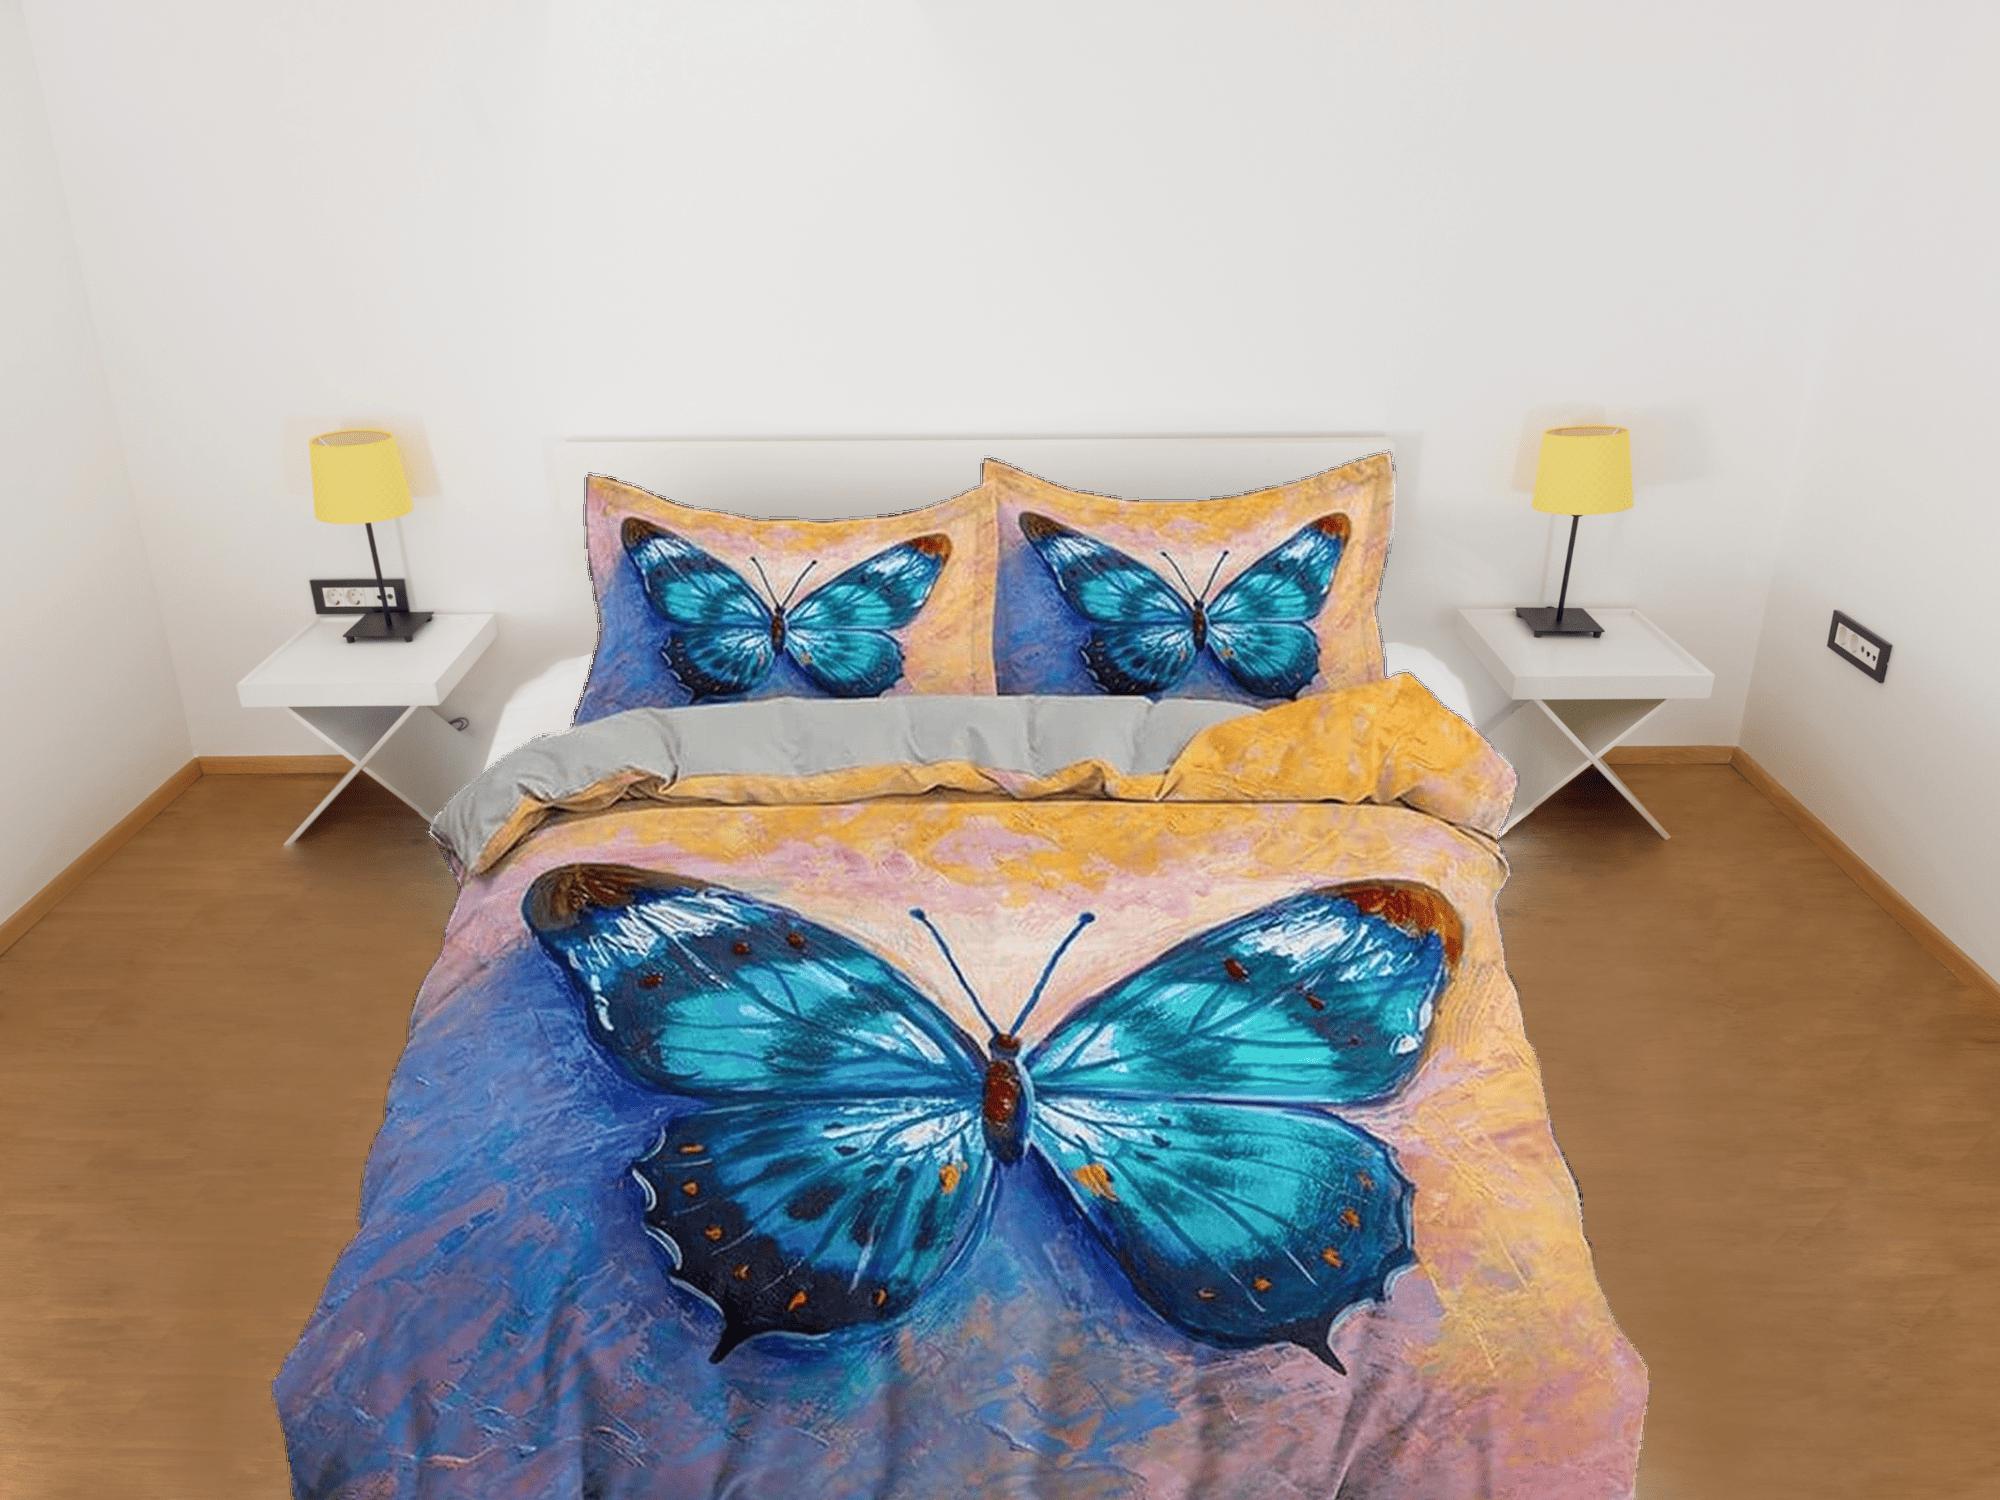 daintyduvet Artistic blue butterfly bedding boho chic aesthetic yellow orange duvet cover, dorm bedding full size duvet king queen twin, nursery toddler